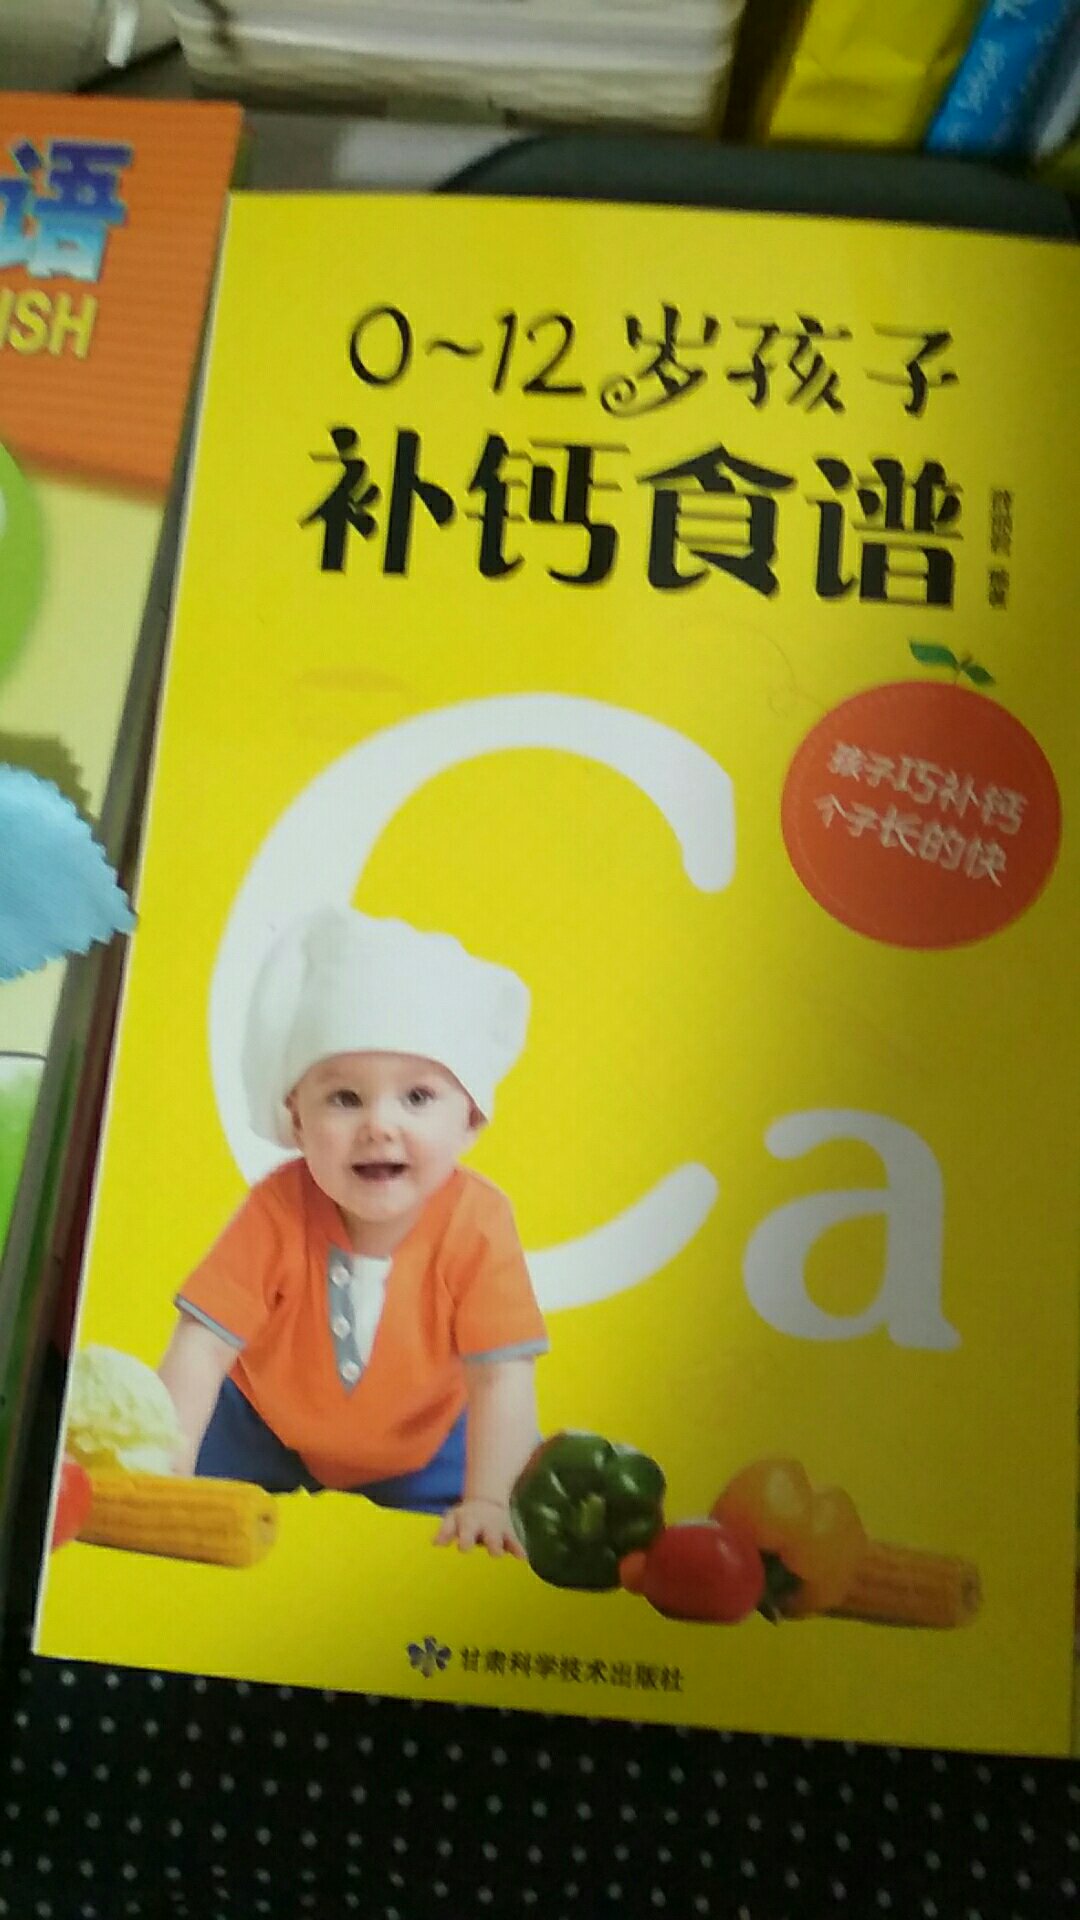 买了作为家里孩子膳食补钙参考用书。